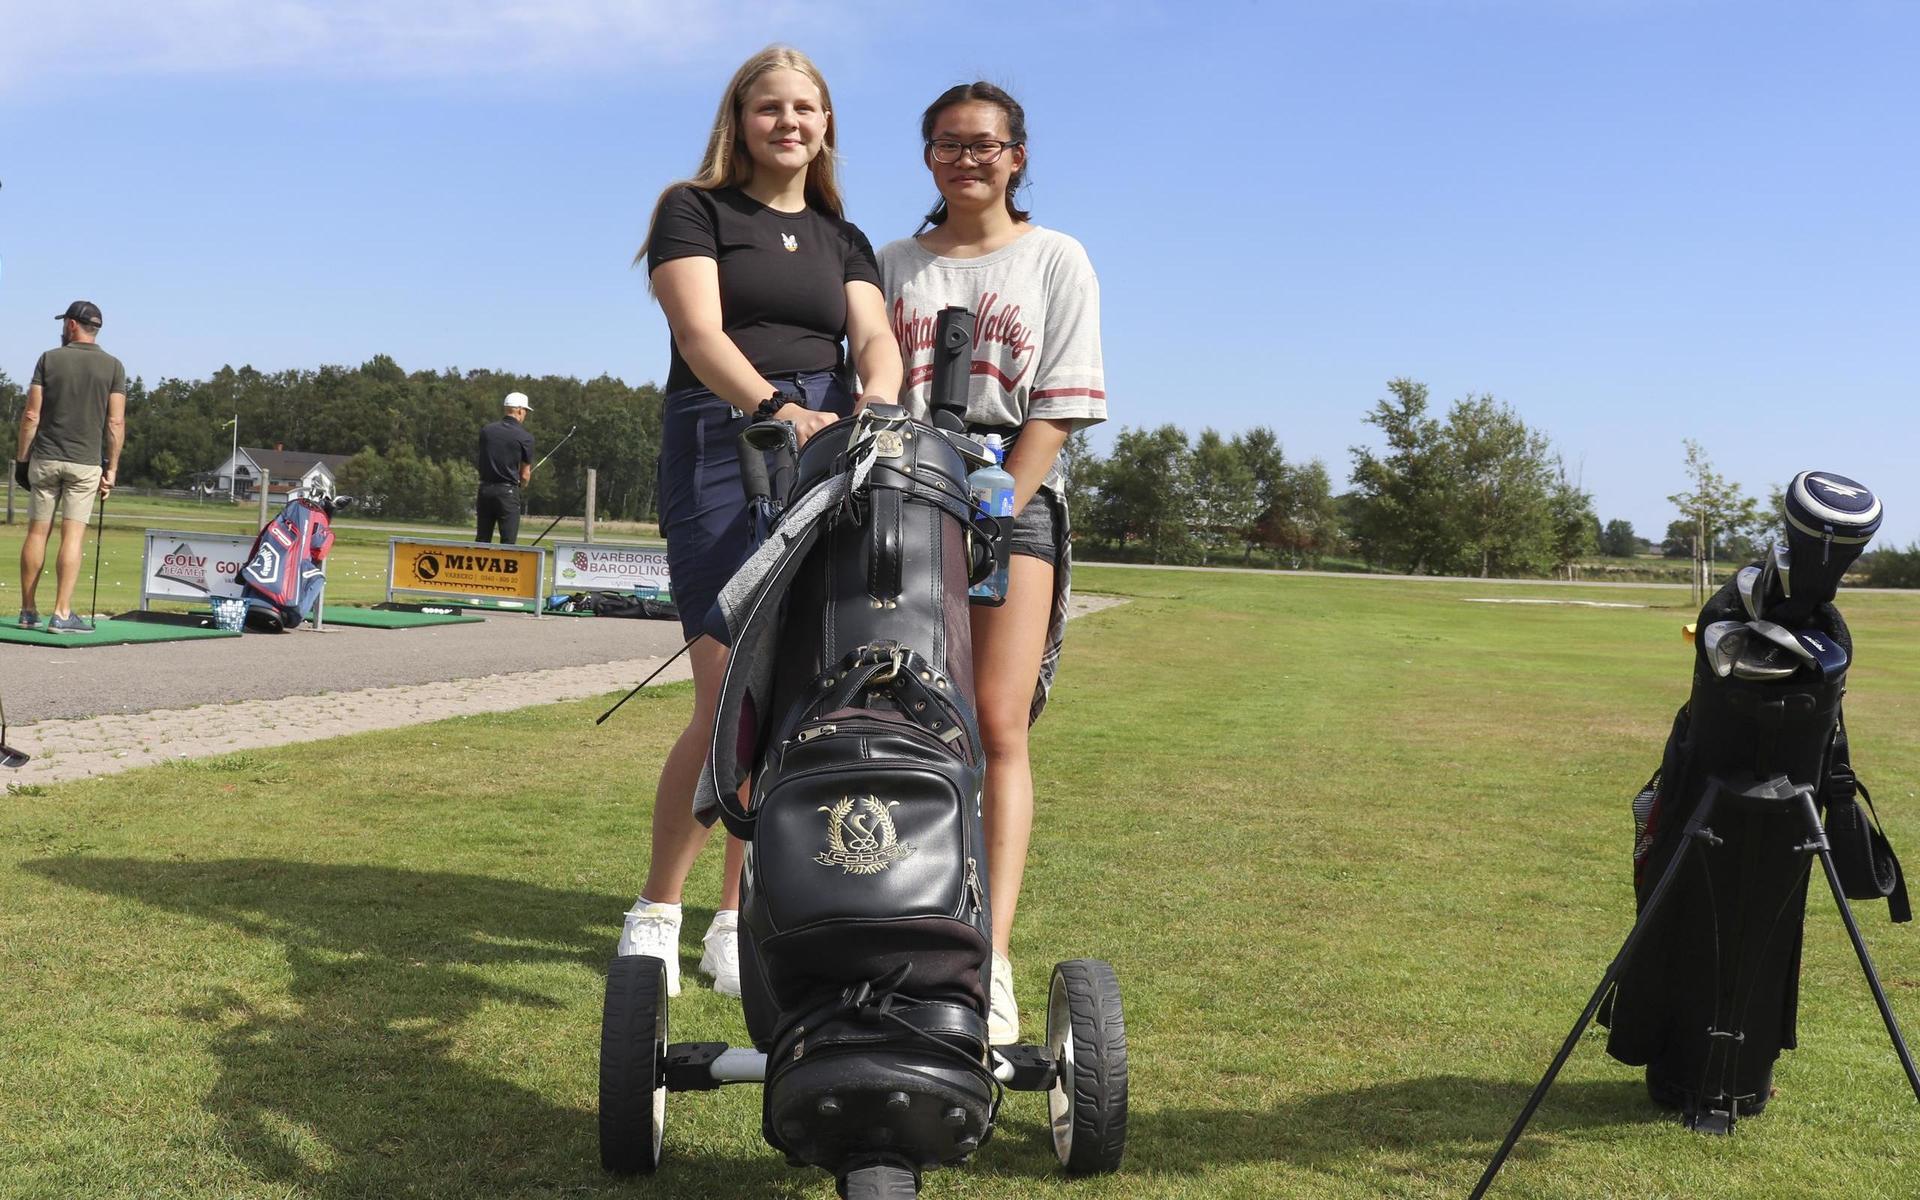 Sonja Elmén och Mei-Mei Karlsson har lärt känna varandra genom golfskolan. ”Jag vill kunna spela med min mormor och syster”, säger Mei-Mei Karlsson.